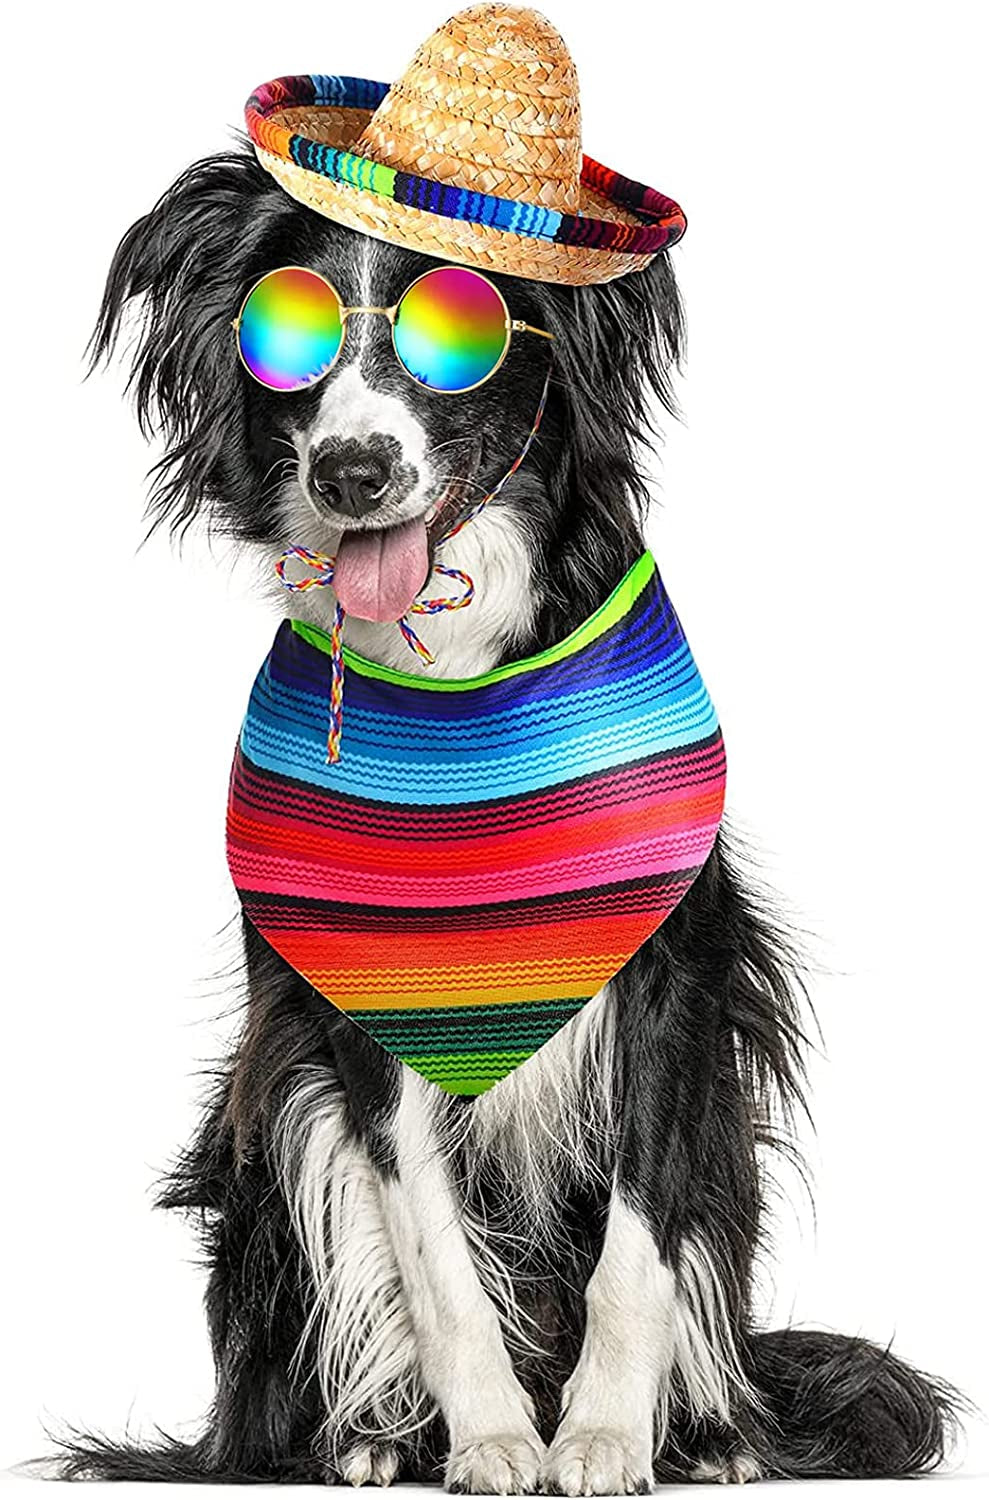 3 Pcs Mexican Dog Costume Include Multicolor Cinco De Mayo Dog Bandana Fiesta Dog Triangle Bib Mexican Dog Sombrero Hat round Sunglasses Costume for Dog Gifts Mexican Cinco De Mayo Party Decorations